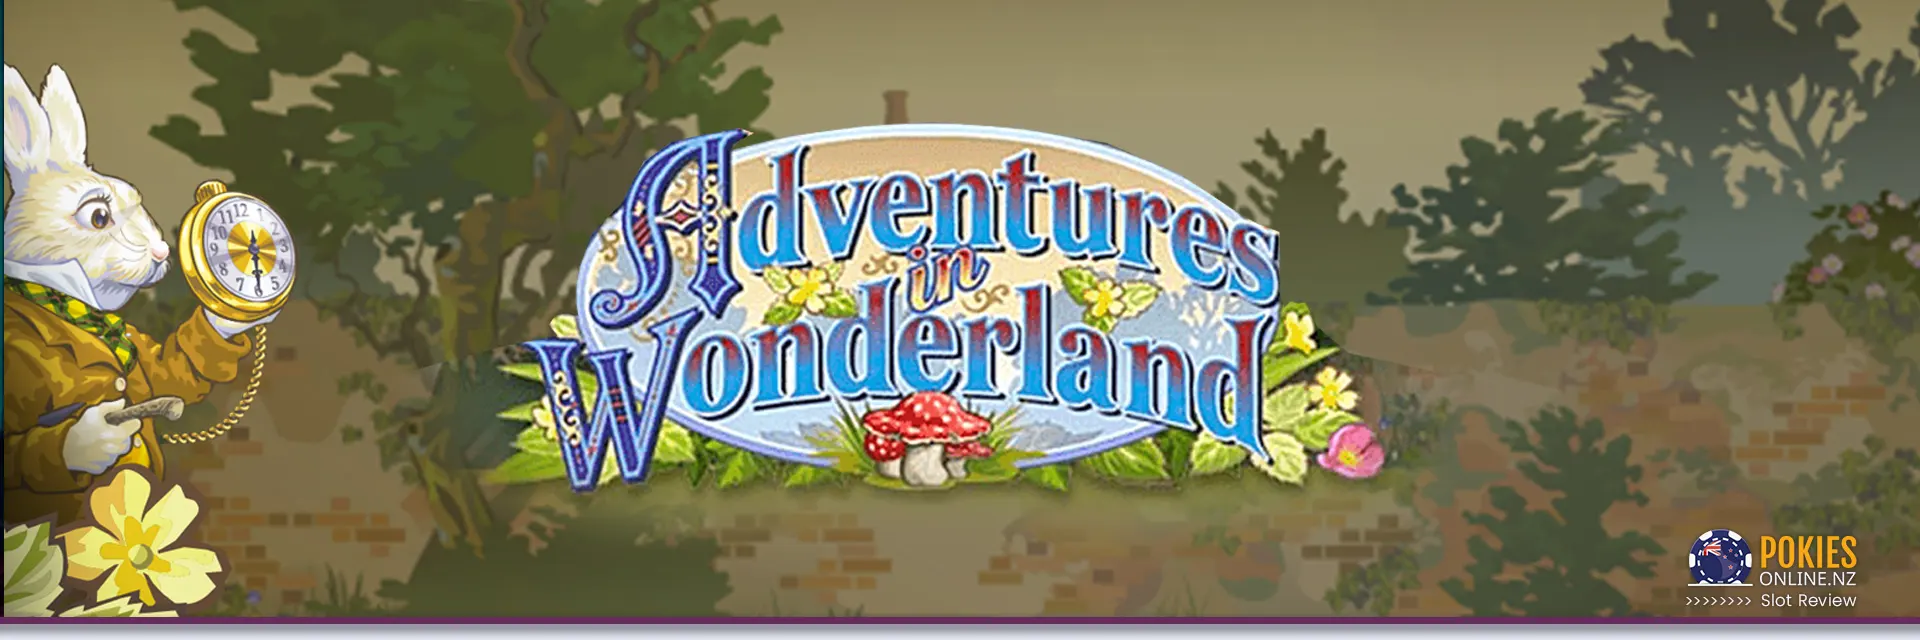 Adventure in wonderland slot banner